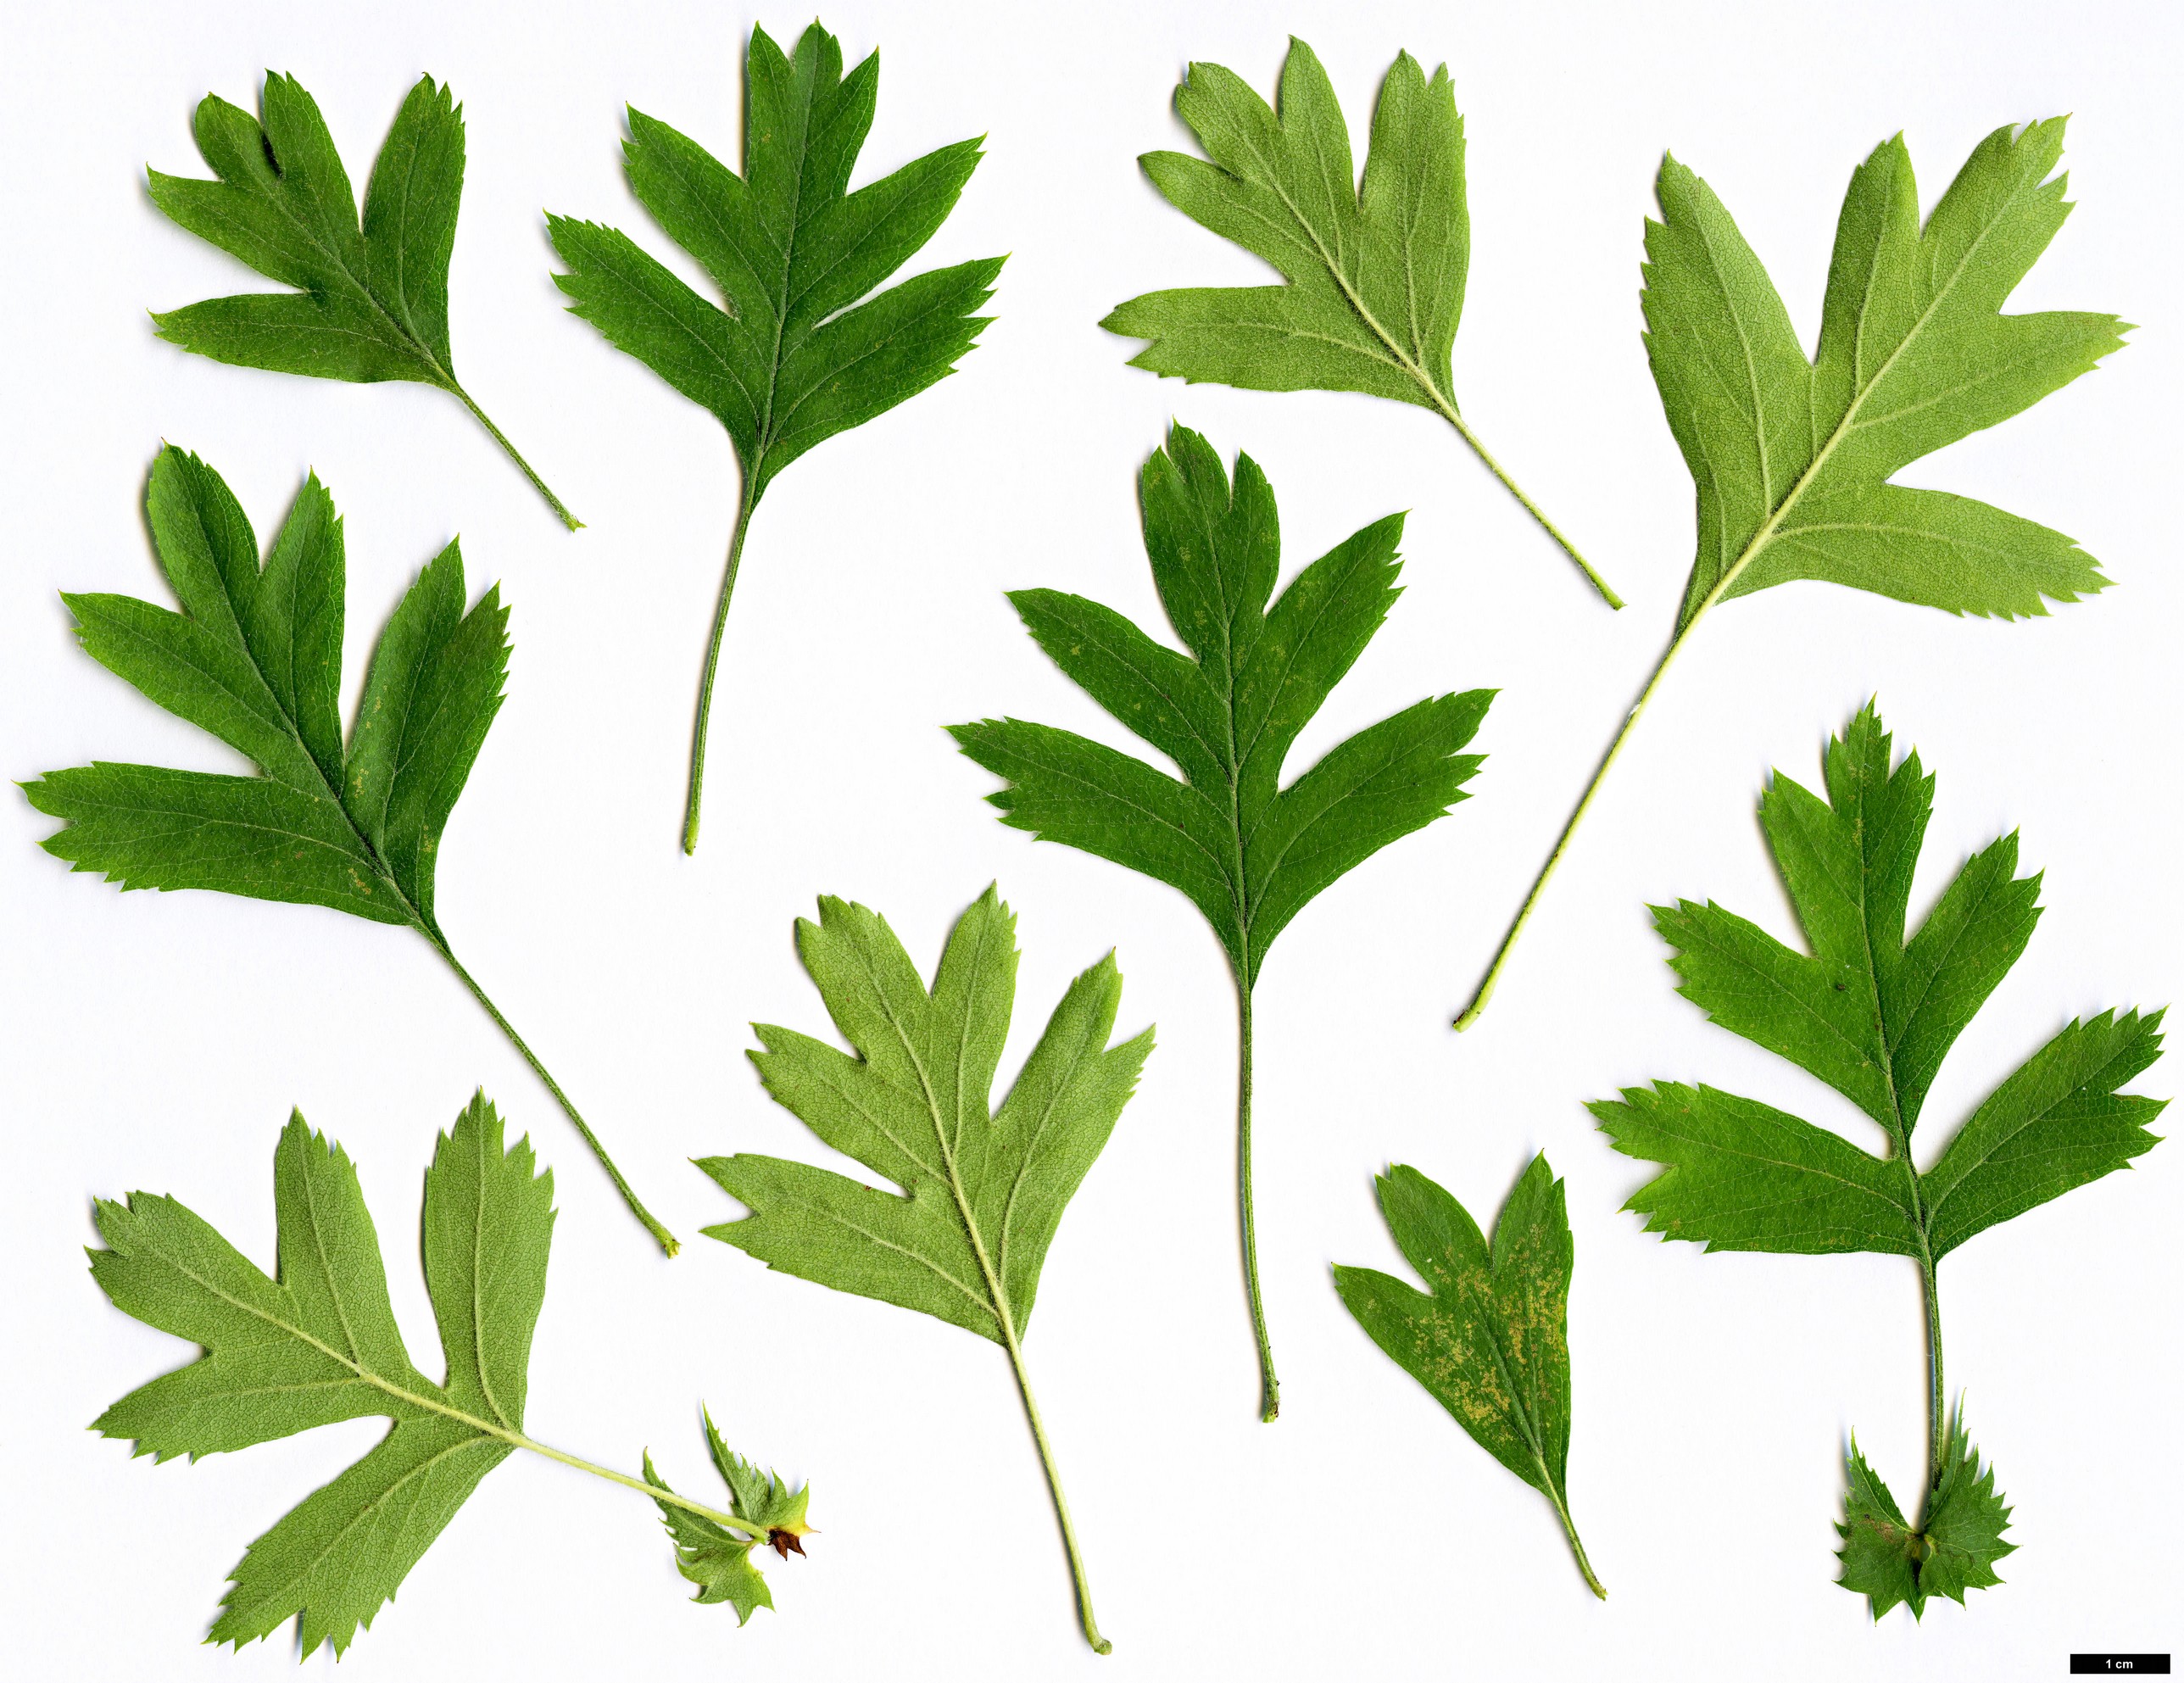 High resolution image: Family: Rosaceae - Genus: Crataegus - Taxon: caucasica